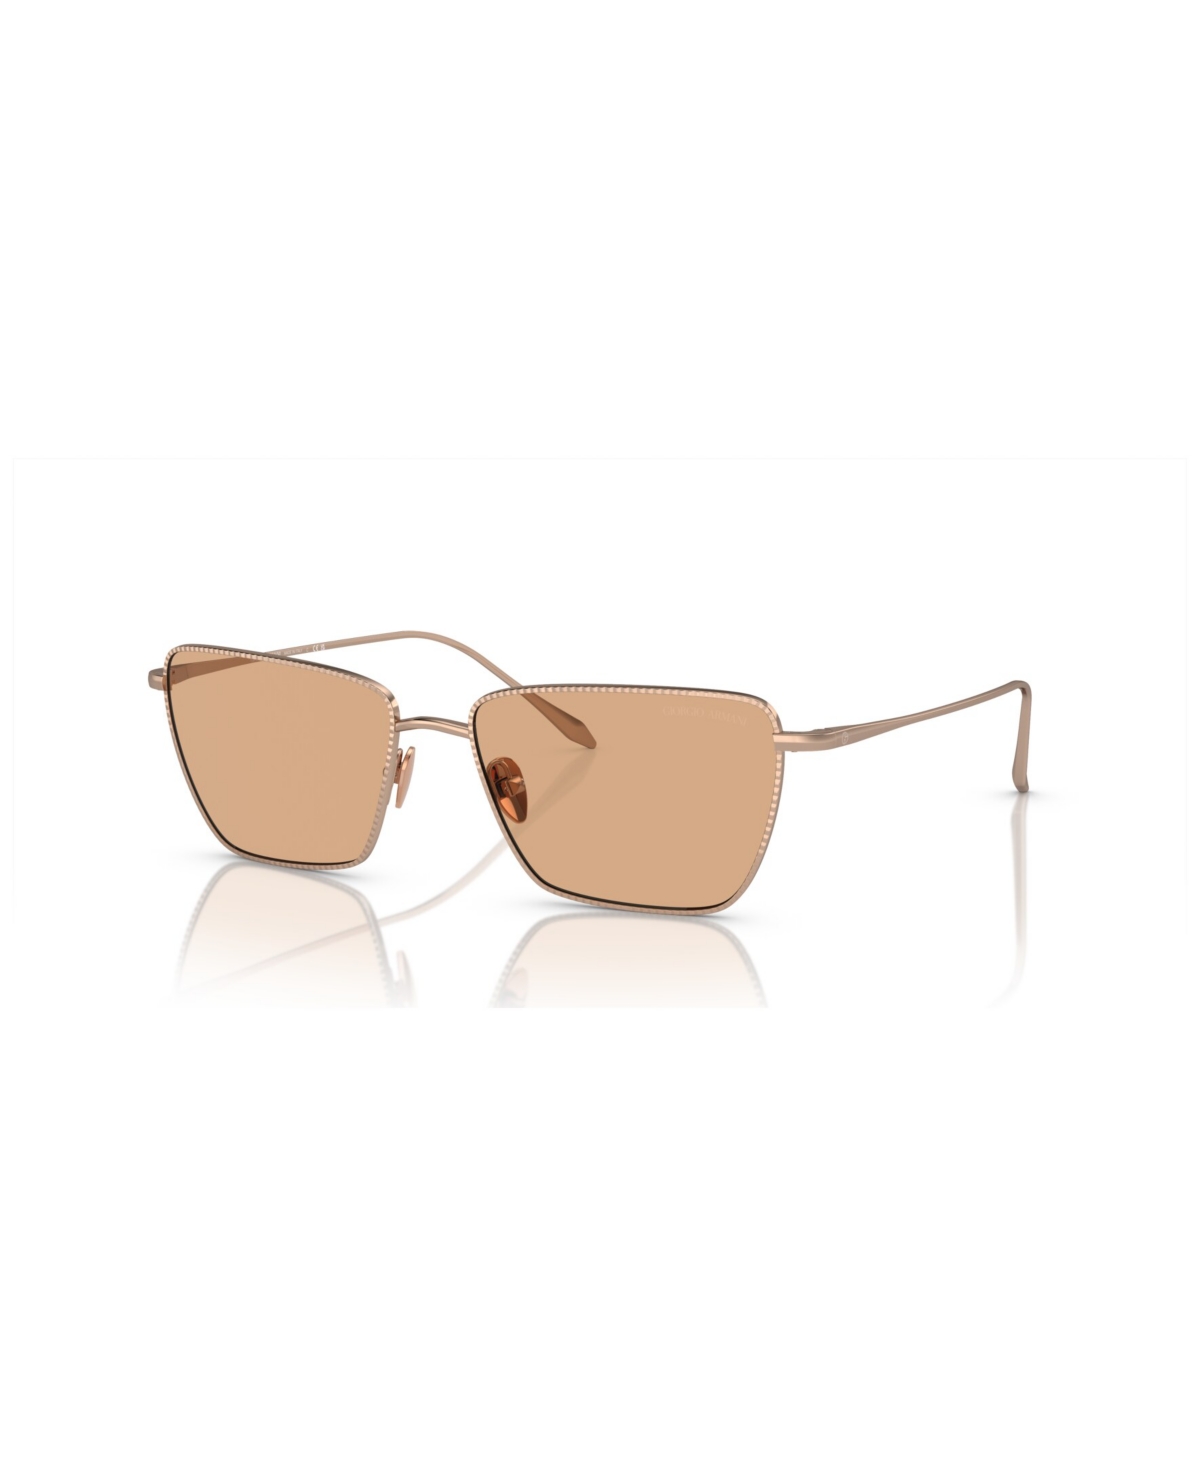 Giorgio Armani Women's Sunglasses Ar6153 In Rose Gold